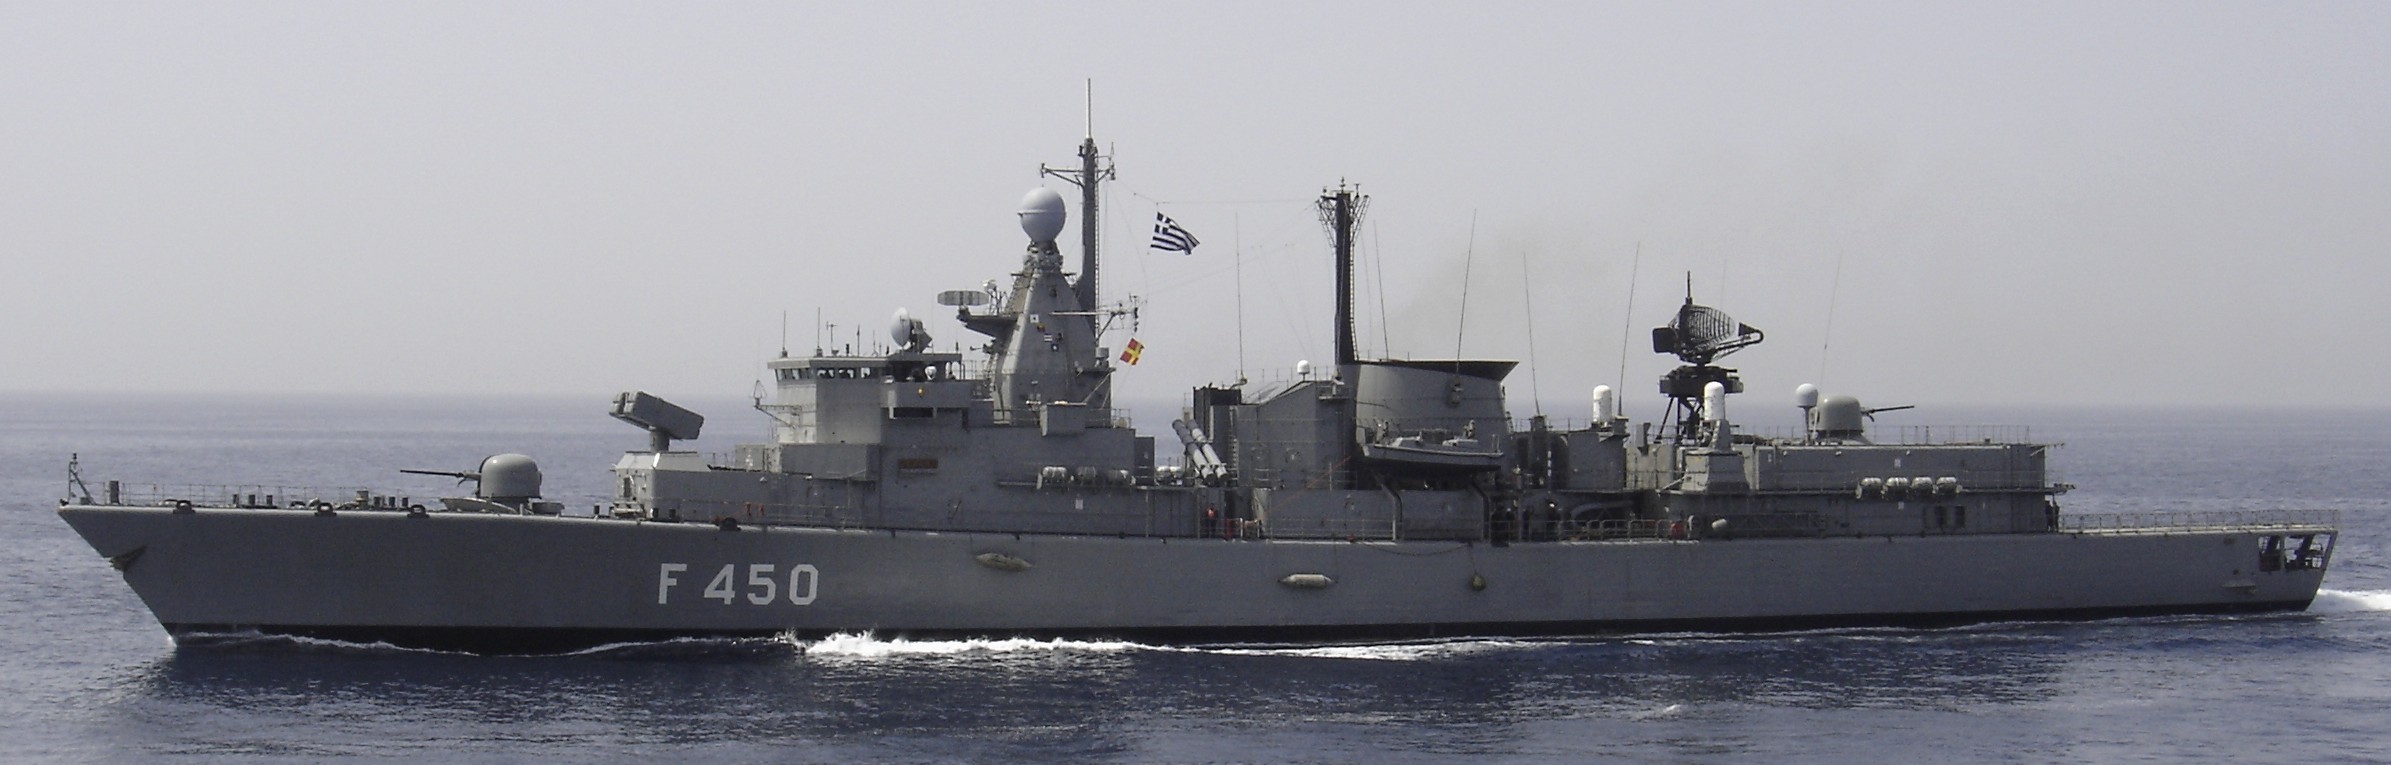 f 450 hs elli class frigate hellenic navy greece 04